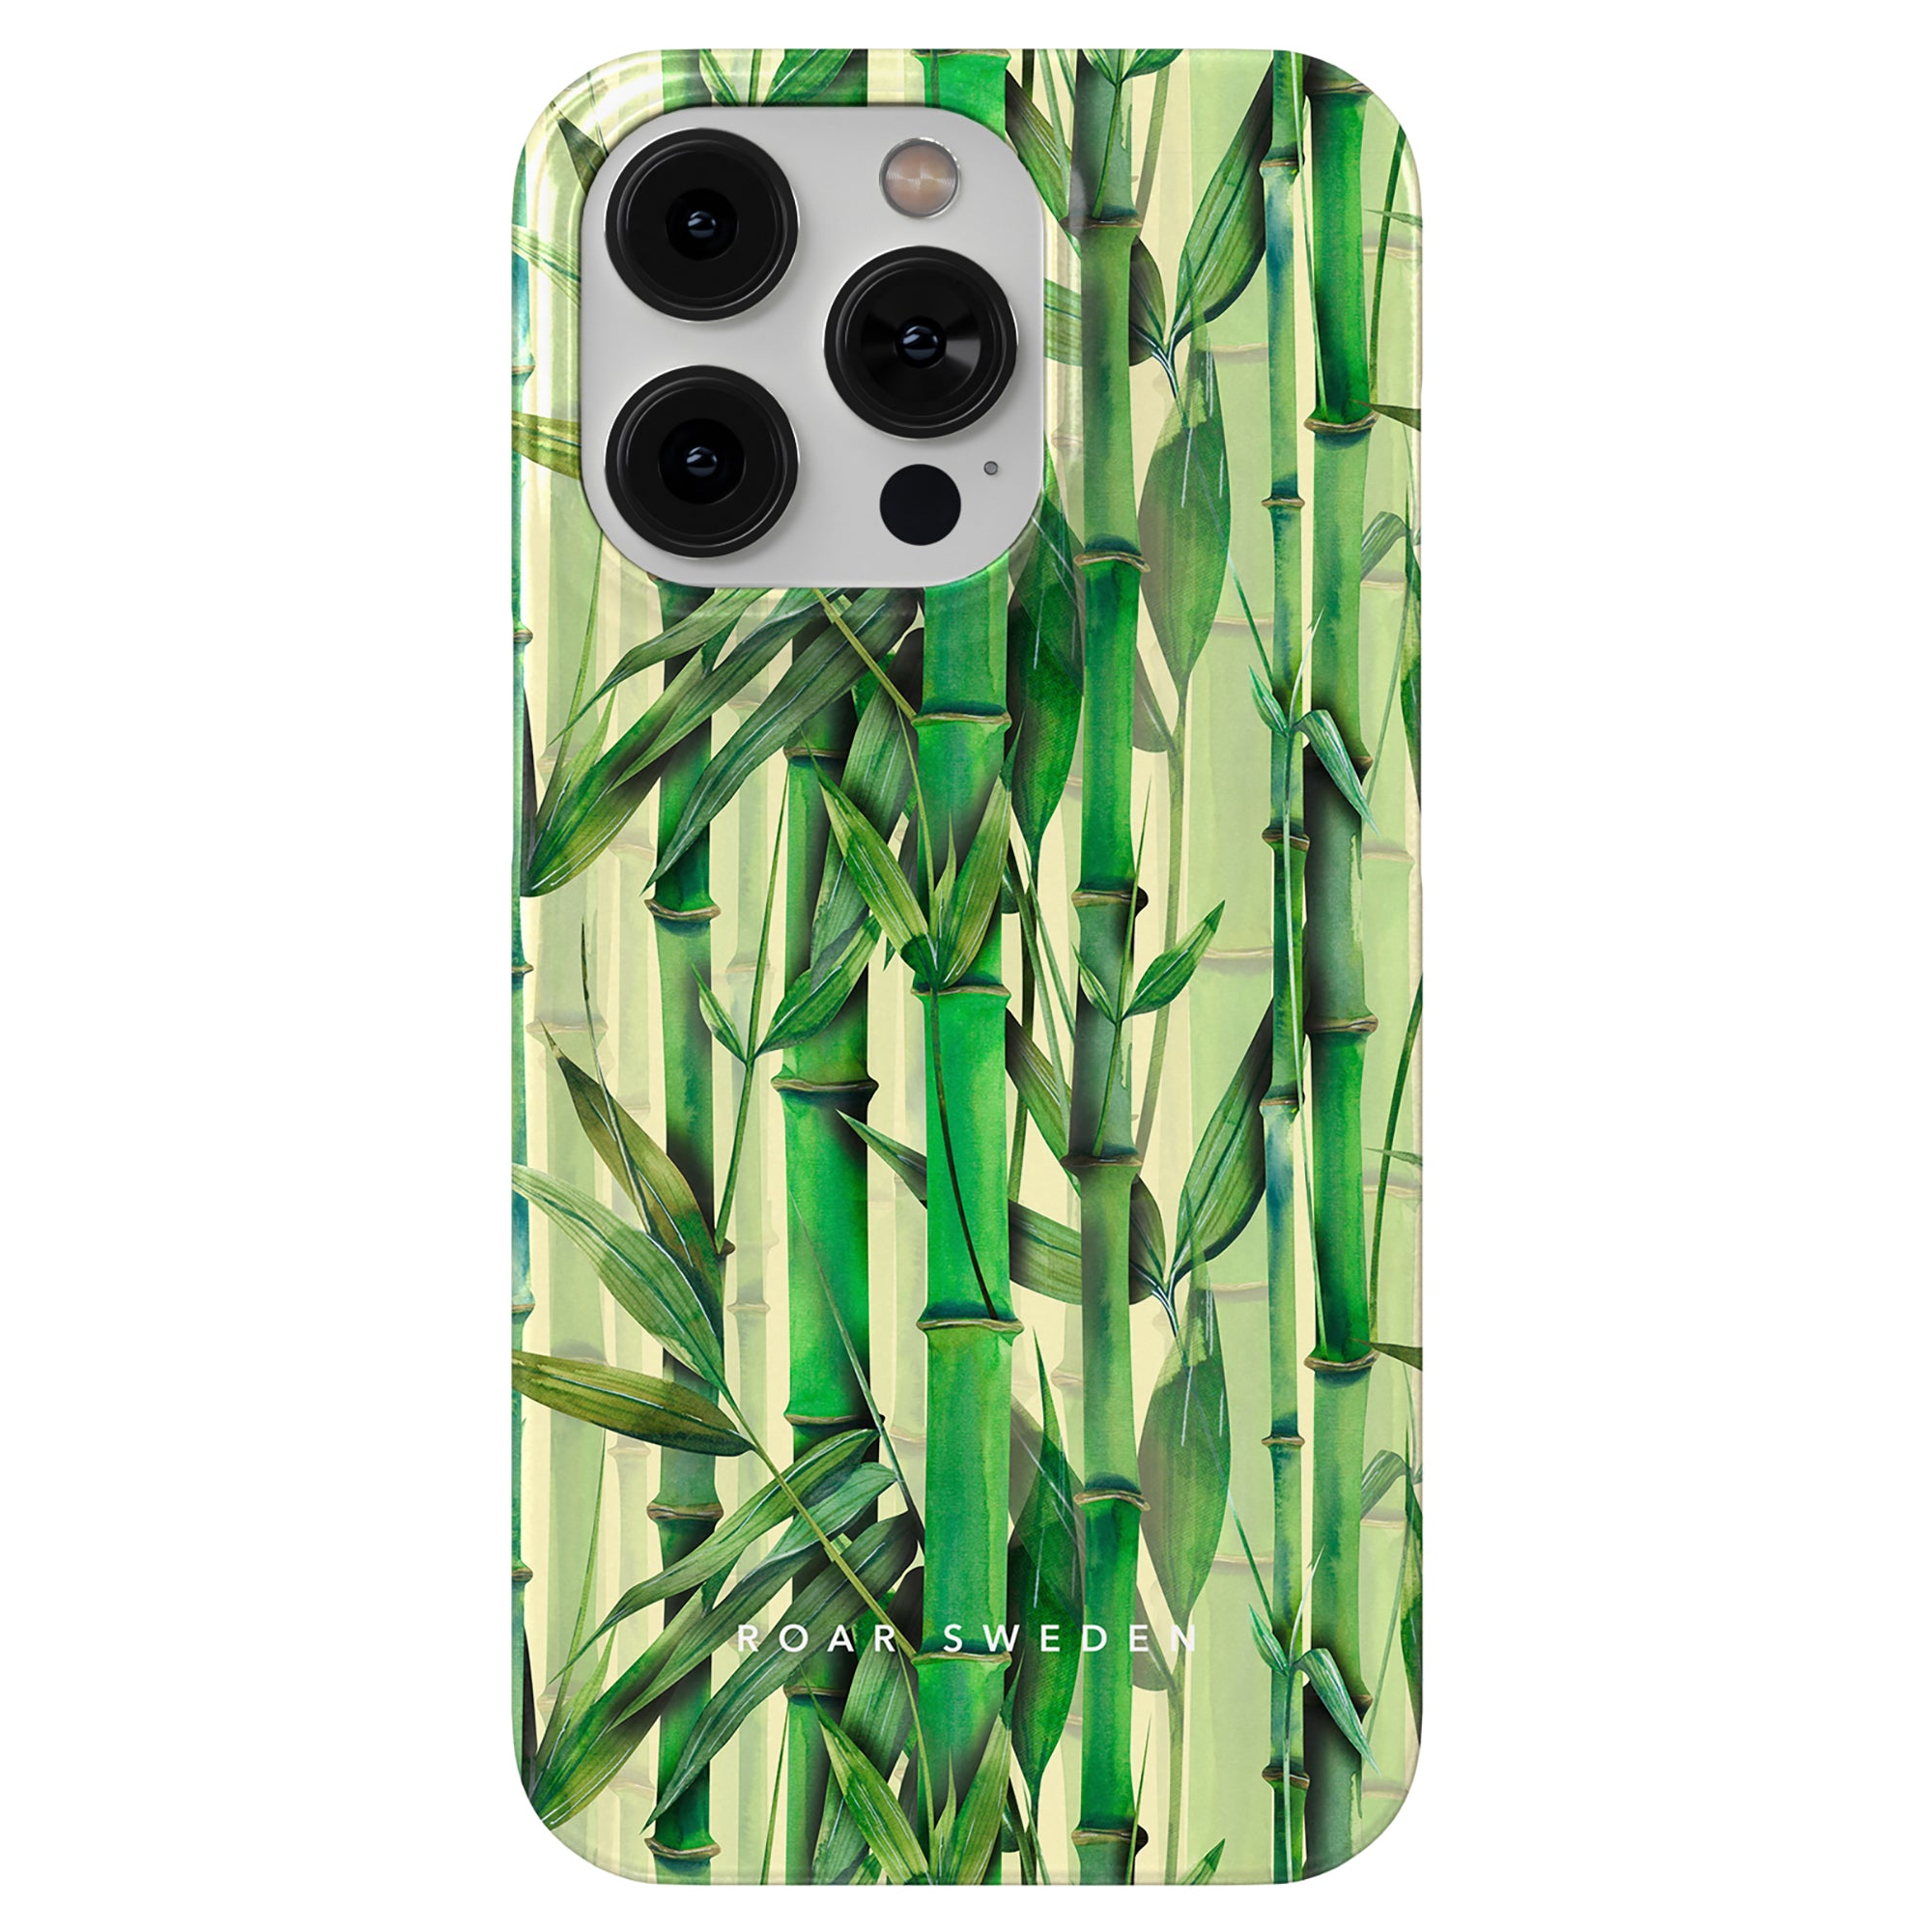 Ett Bambu - Slim Case mobiltelefonfodral med ett grönt bambumönster.